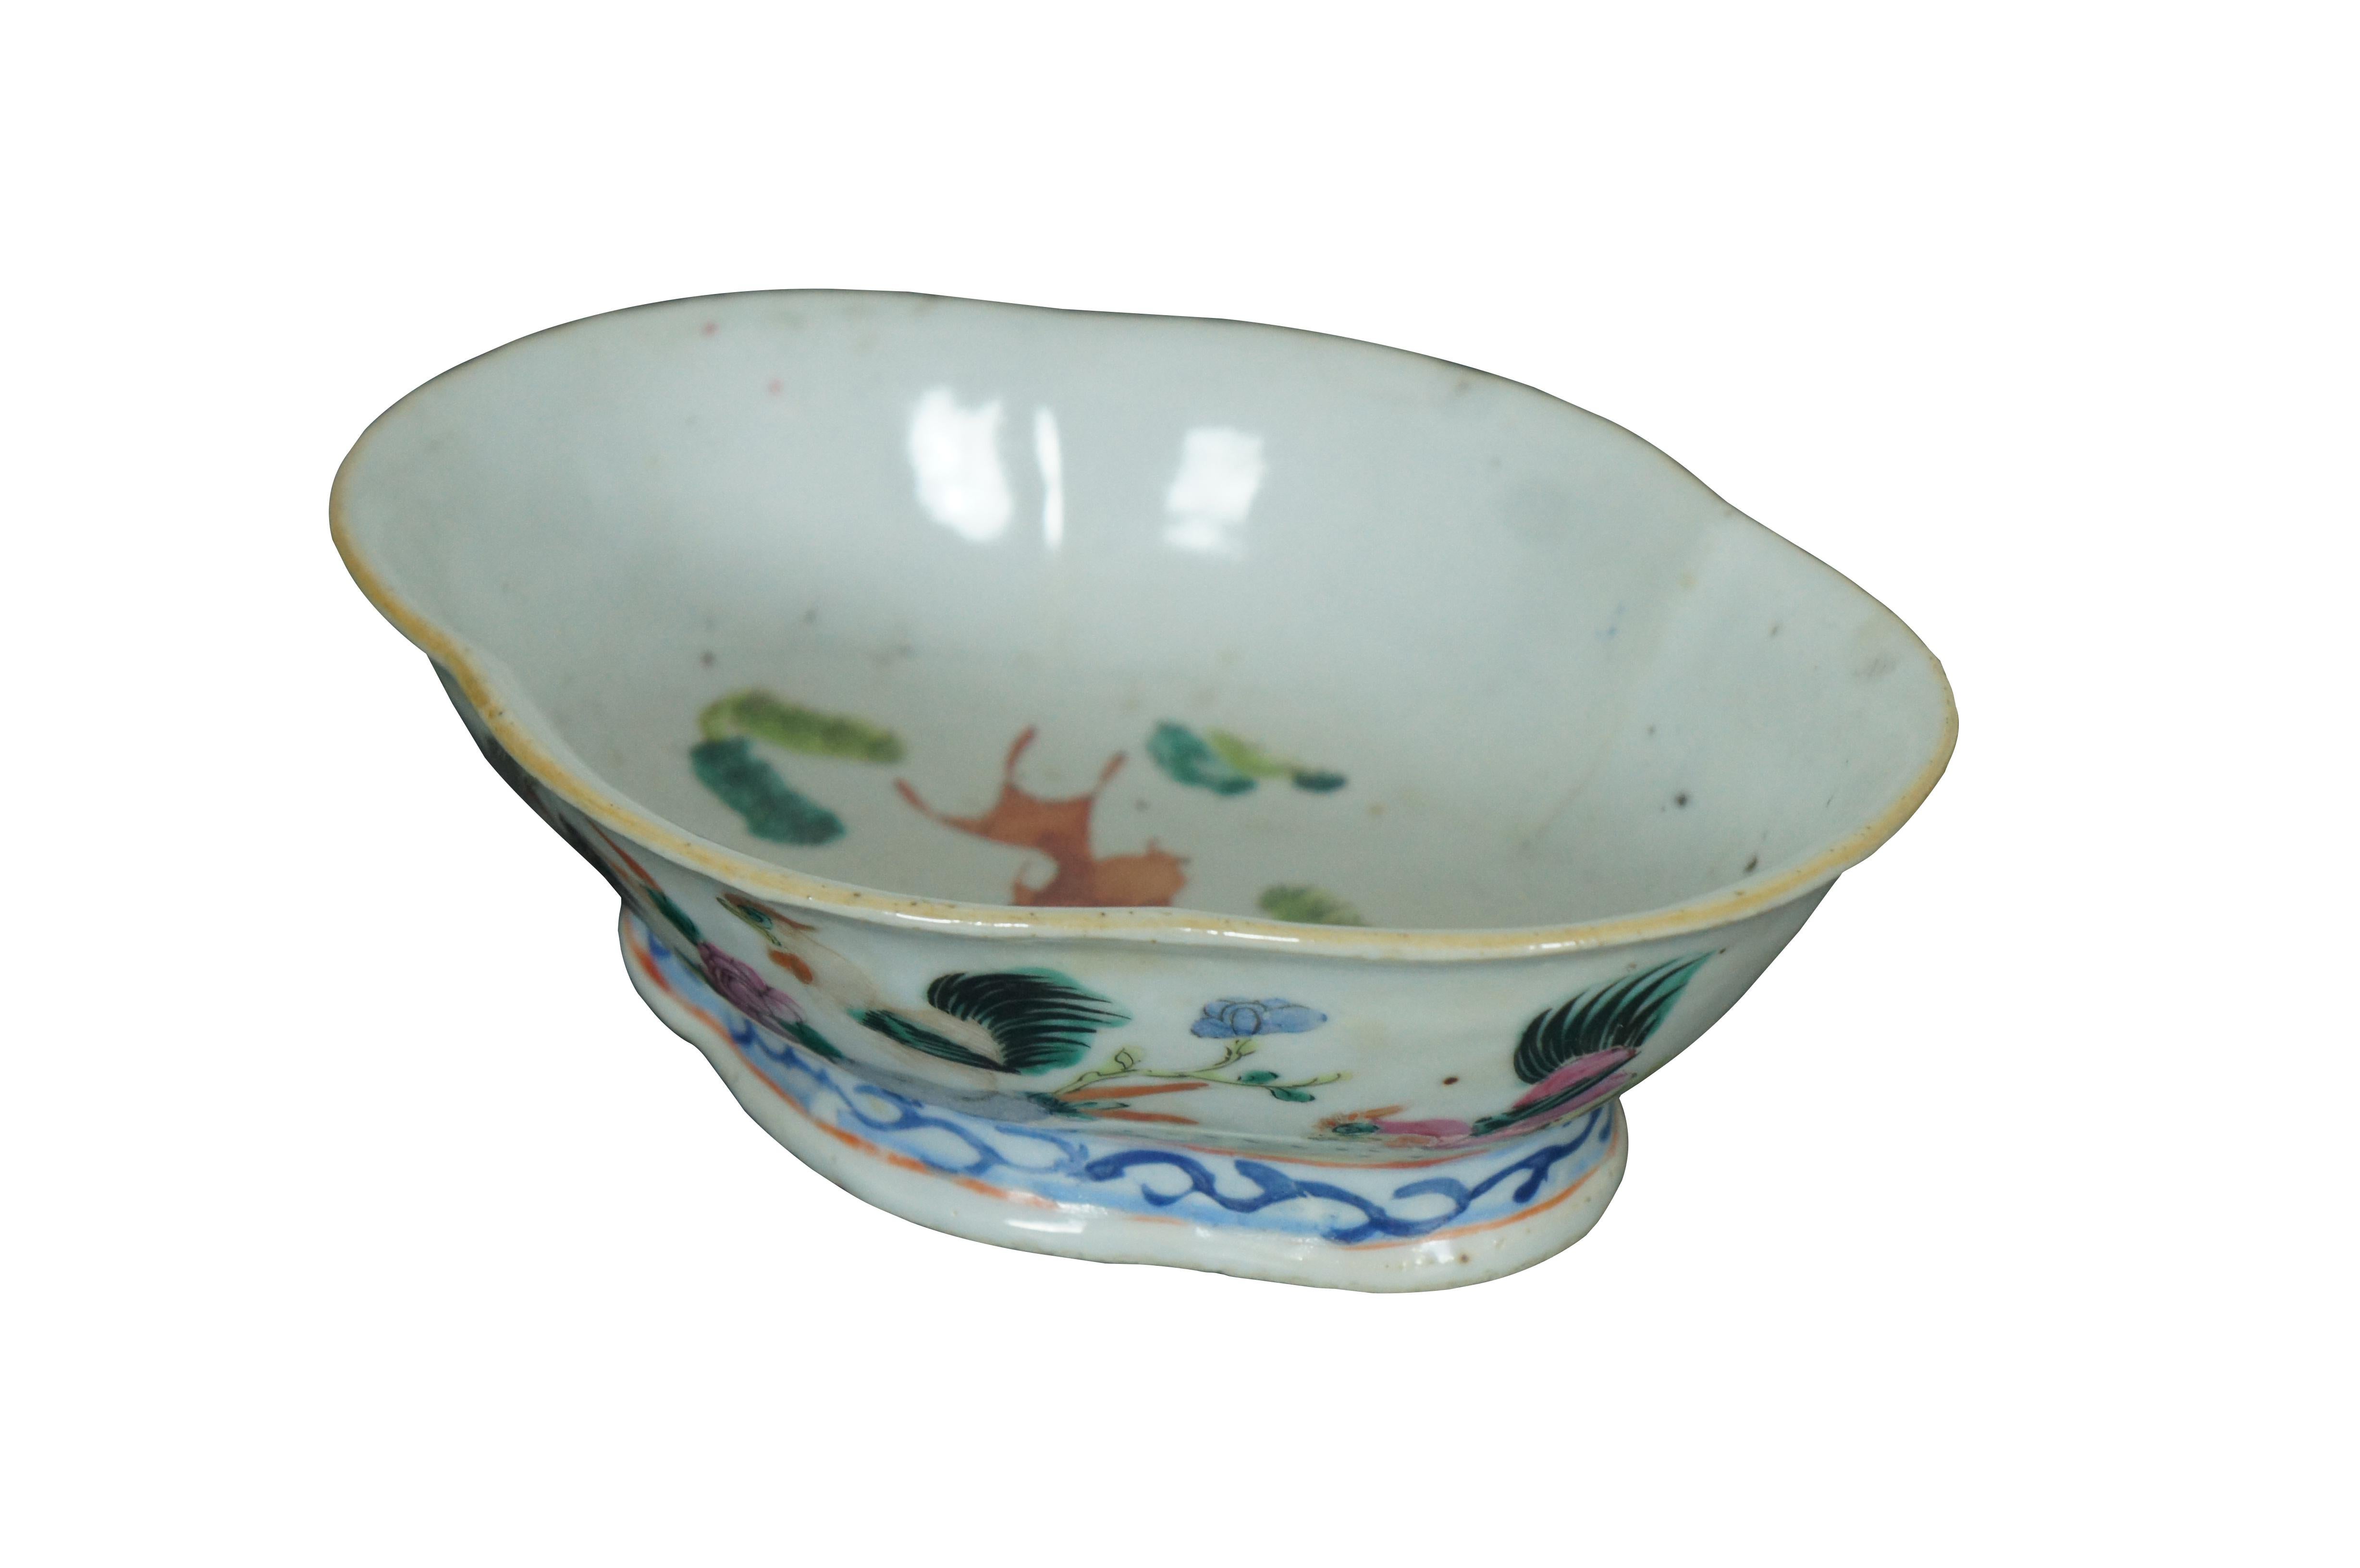 Un impressionnant bol d'exportation chinois du milieu du 19e siècle.  Fabriqué en porcelaine avec un motif polychrome de coq et de poule.  Il présente une forme lobée / festonnée et une base à pieds.  L'intérieur est orné d'un motif de poisson koi. 